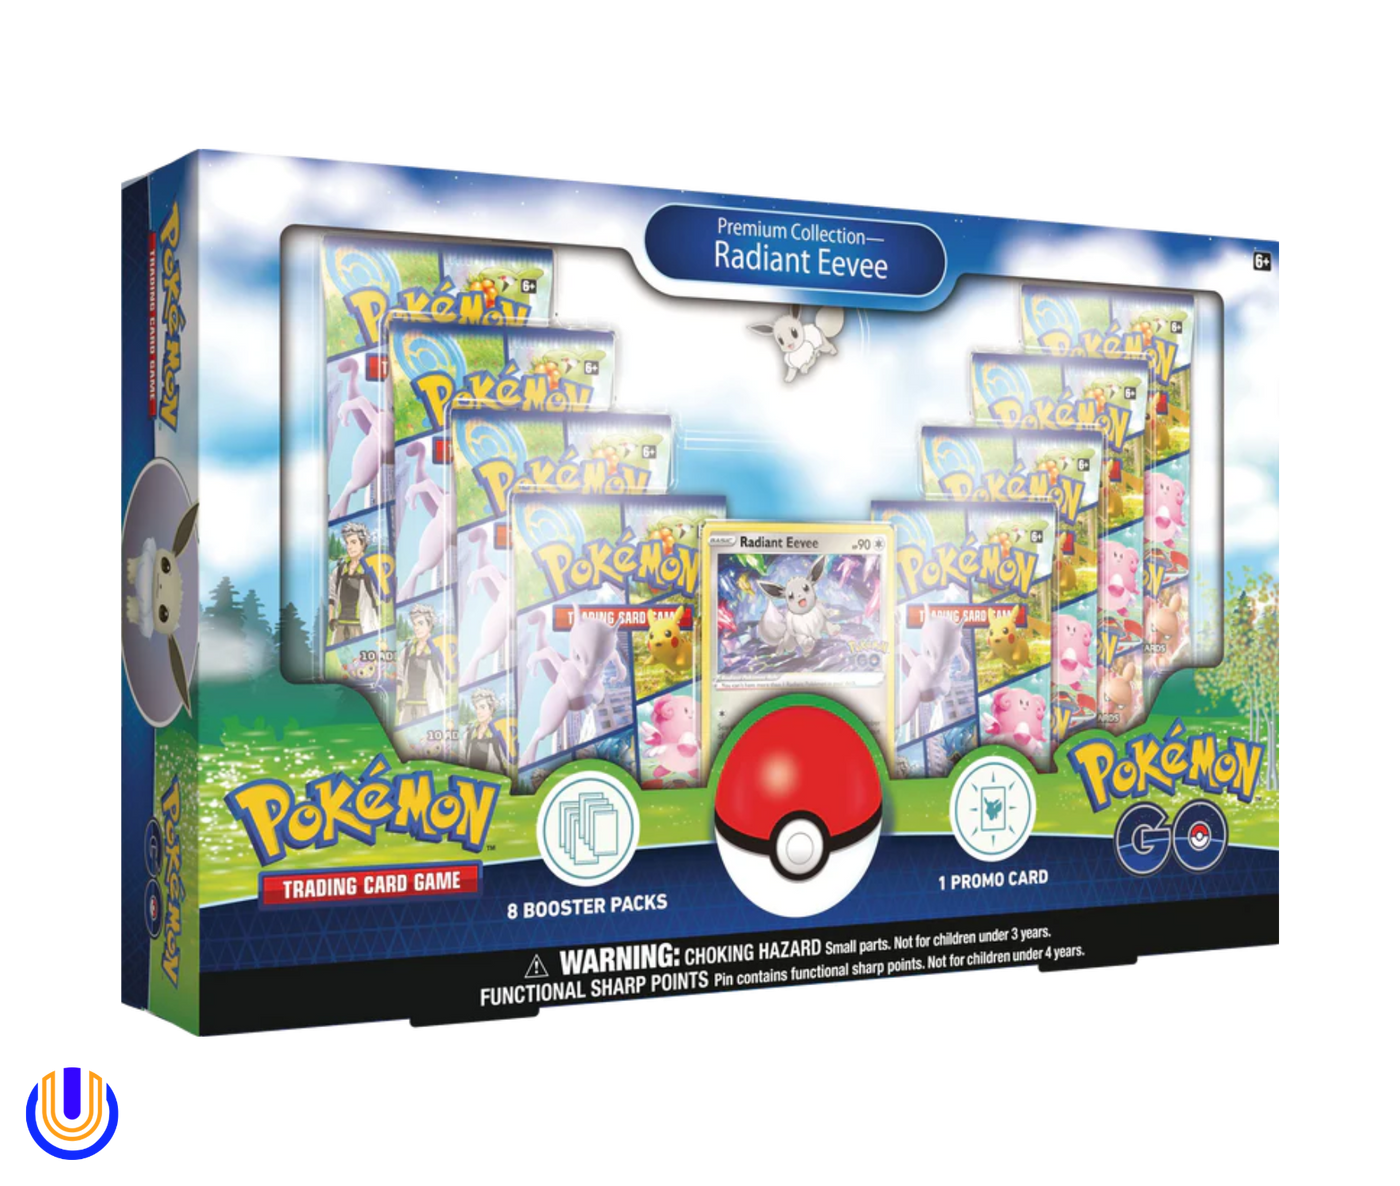 Pokémon TCG: Pokemon Go Premium Collection Radiant Eevee Box